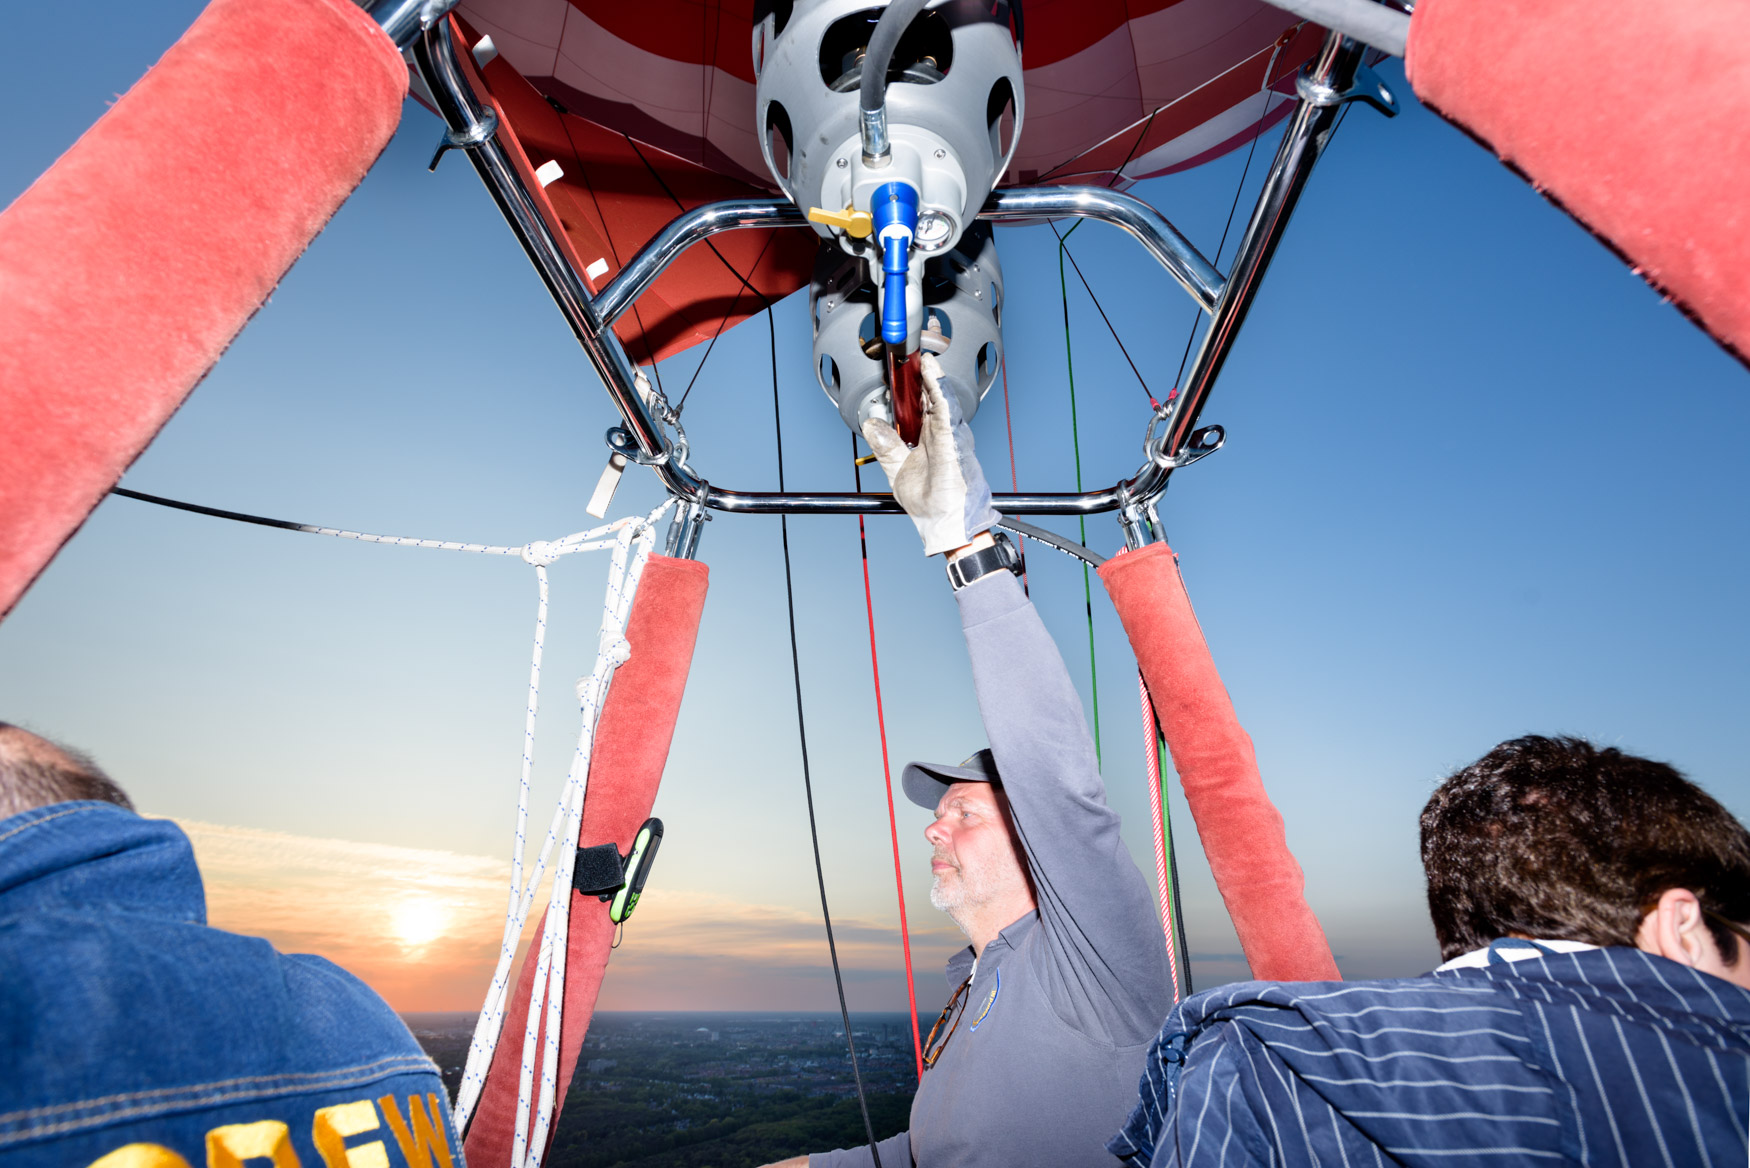 Piloot van luchtballon in vlucht met de Brabant Deur luchtballon met Falcon Ballooning